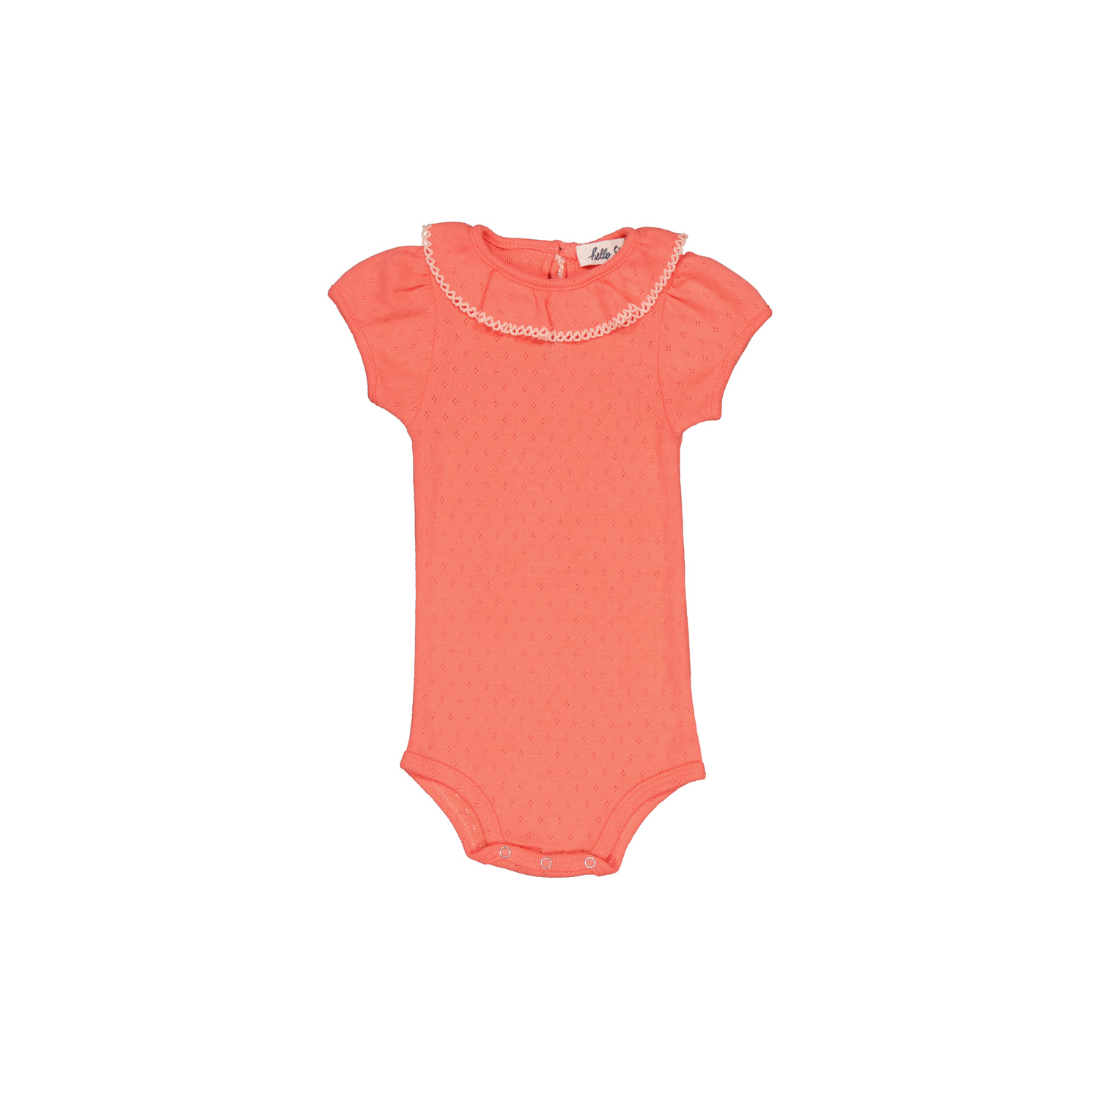 hello simone perrine baby bodysuit - coral